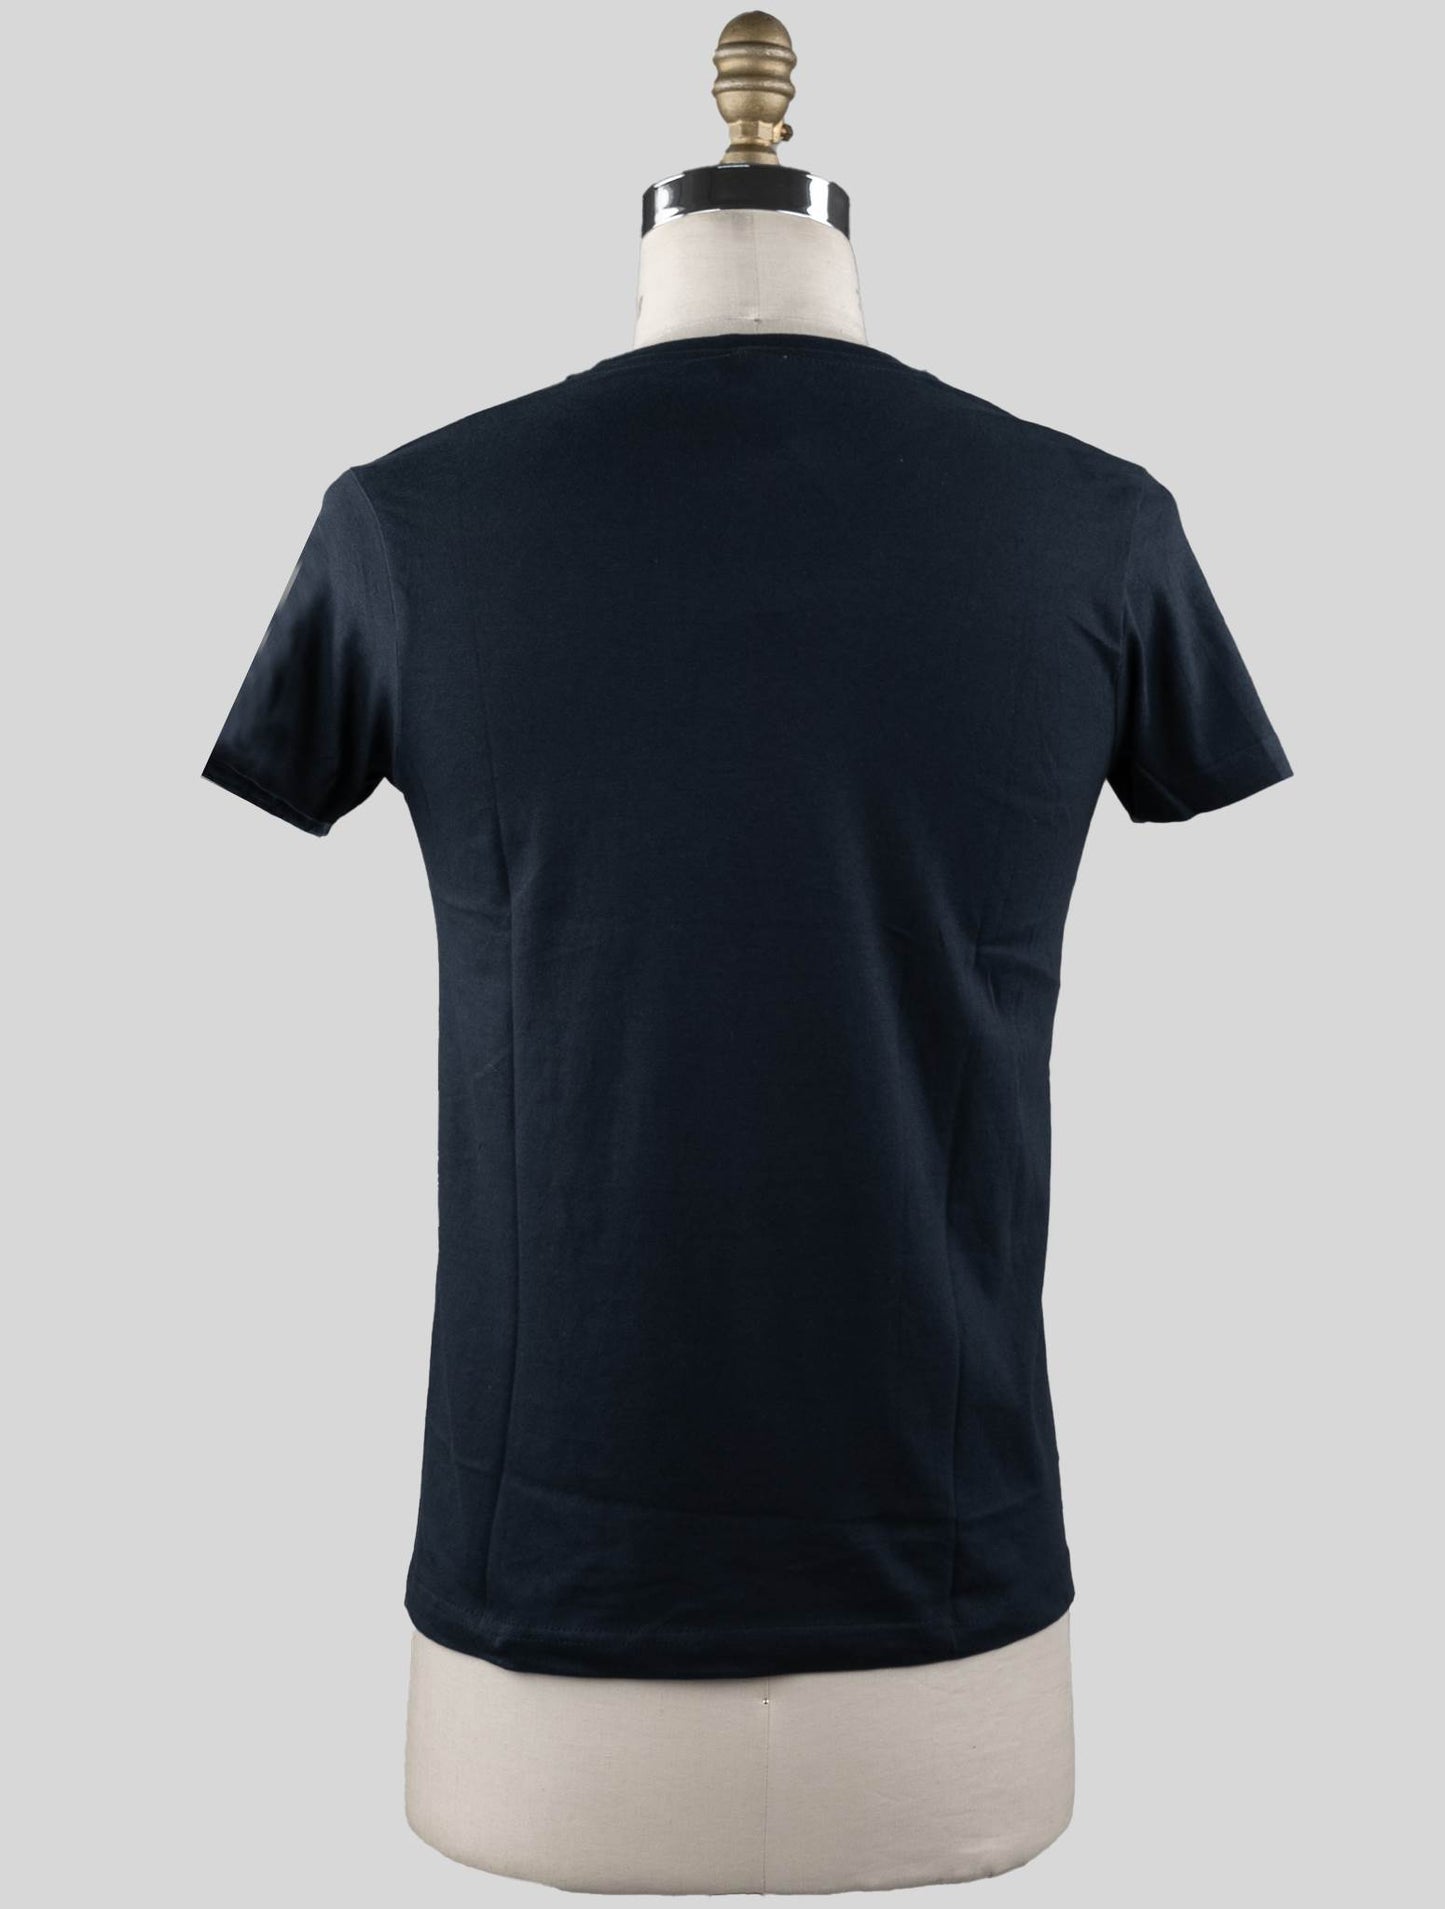 Camiseta Sartorio Napoli Blue Navy Cotton Edição Especial